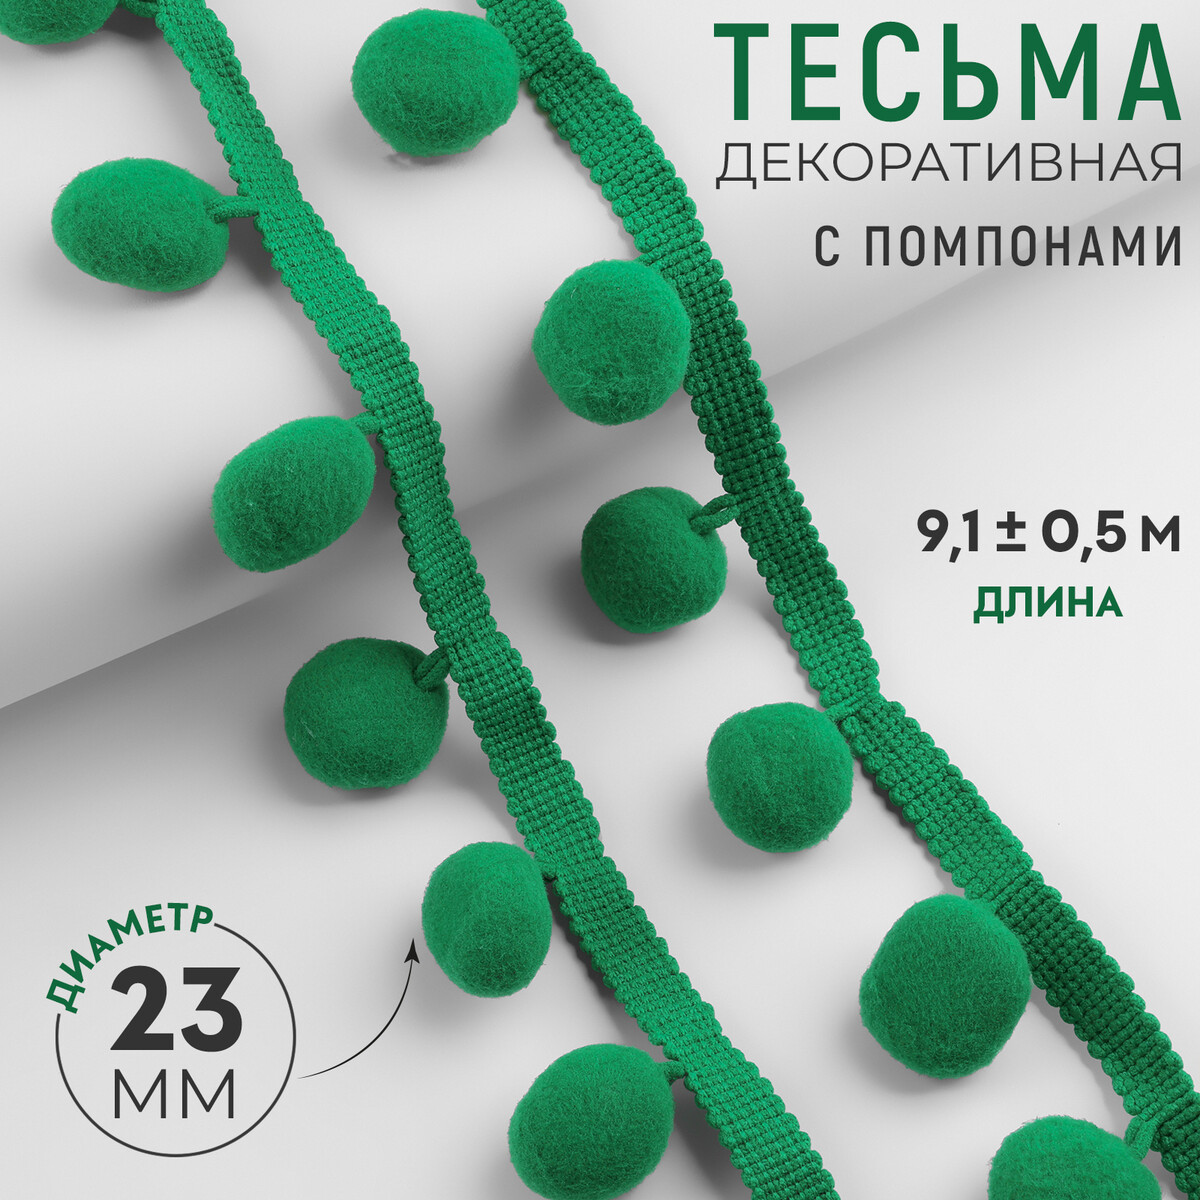 Тесьма декоративная с помпонами, 35 ± 5 мм, 9,1 ± 0,5 м, цвет зеленый